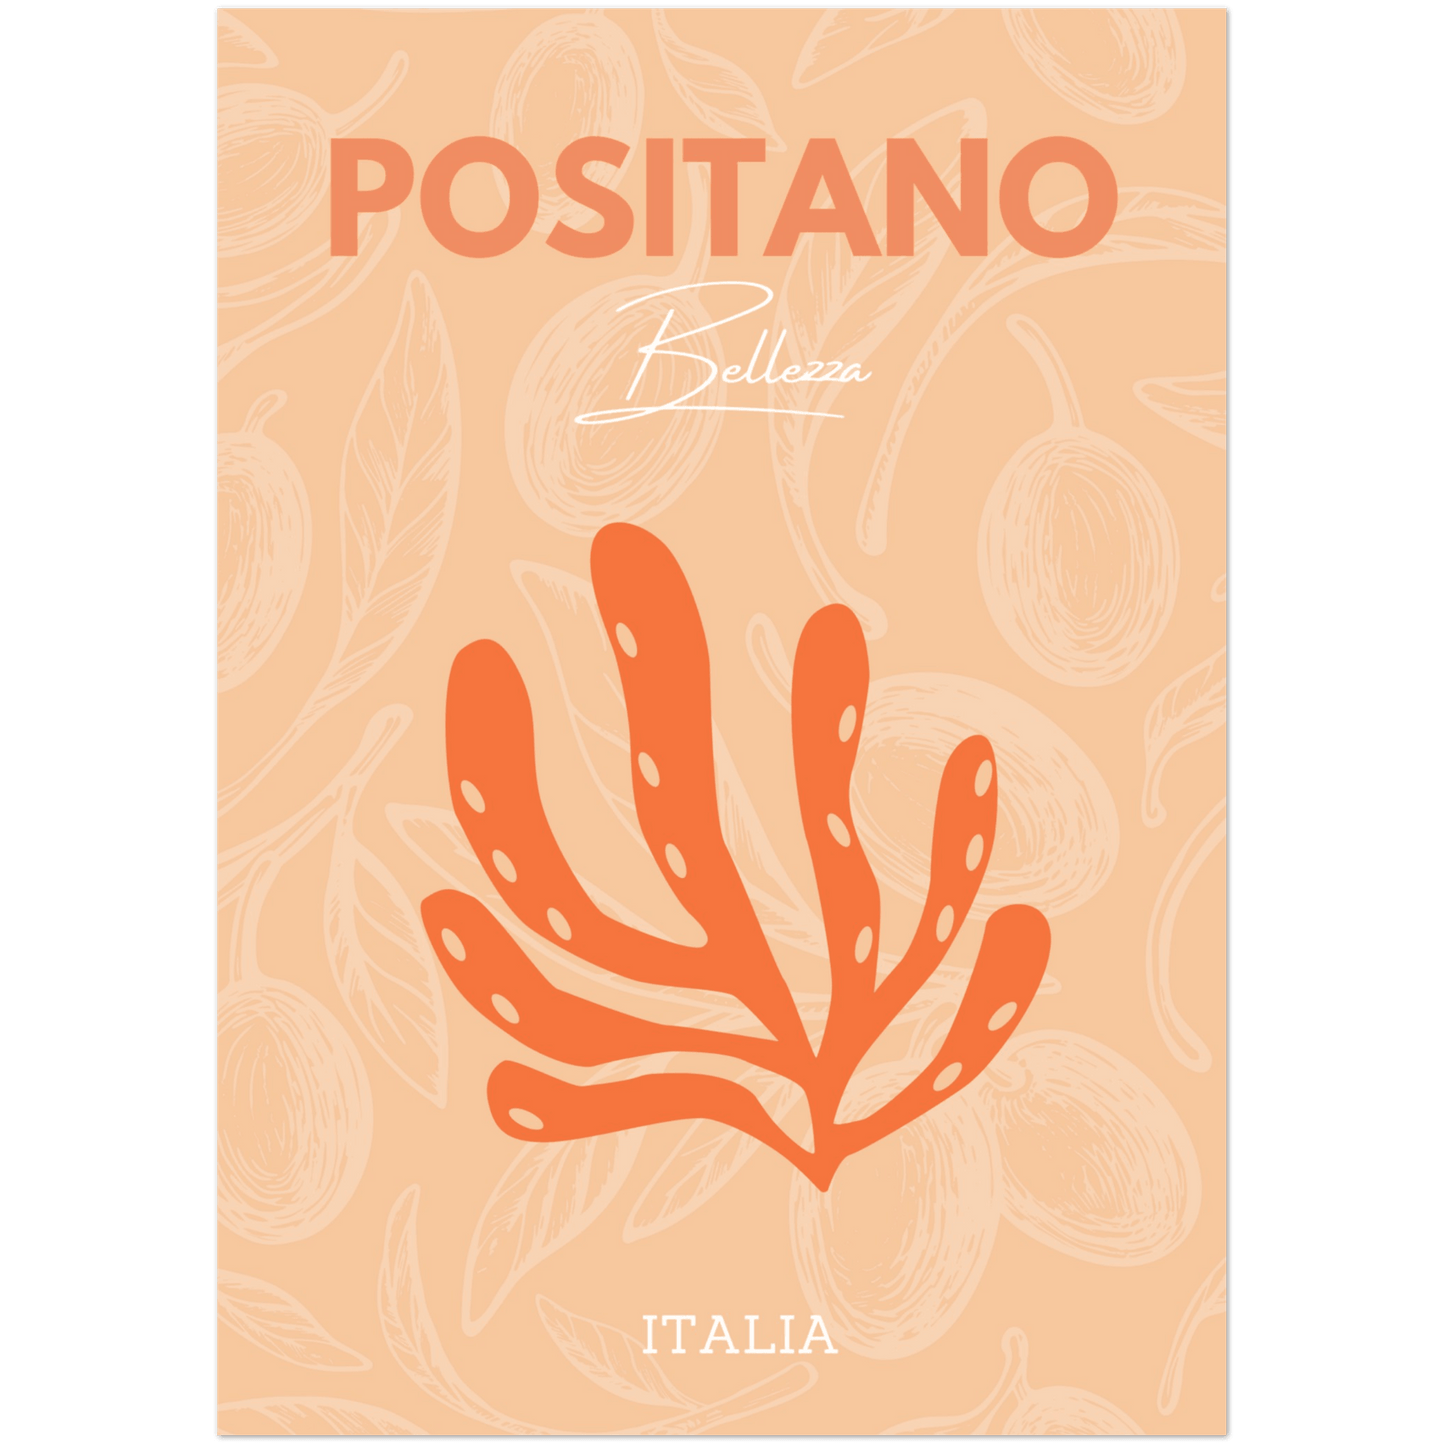 Positano - A4, A3, A2 Posters Base - Poster Print Shop / Art Prints / PostersBase